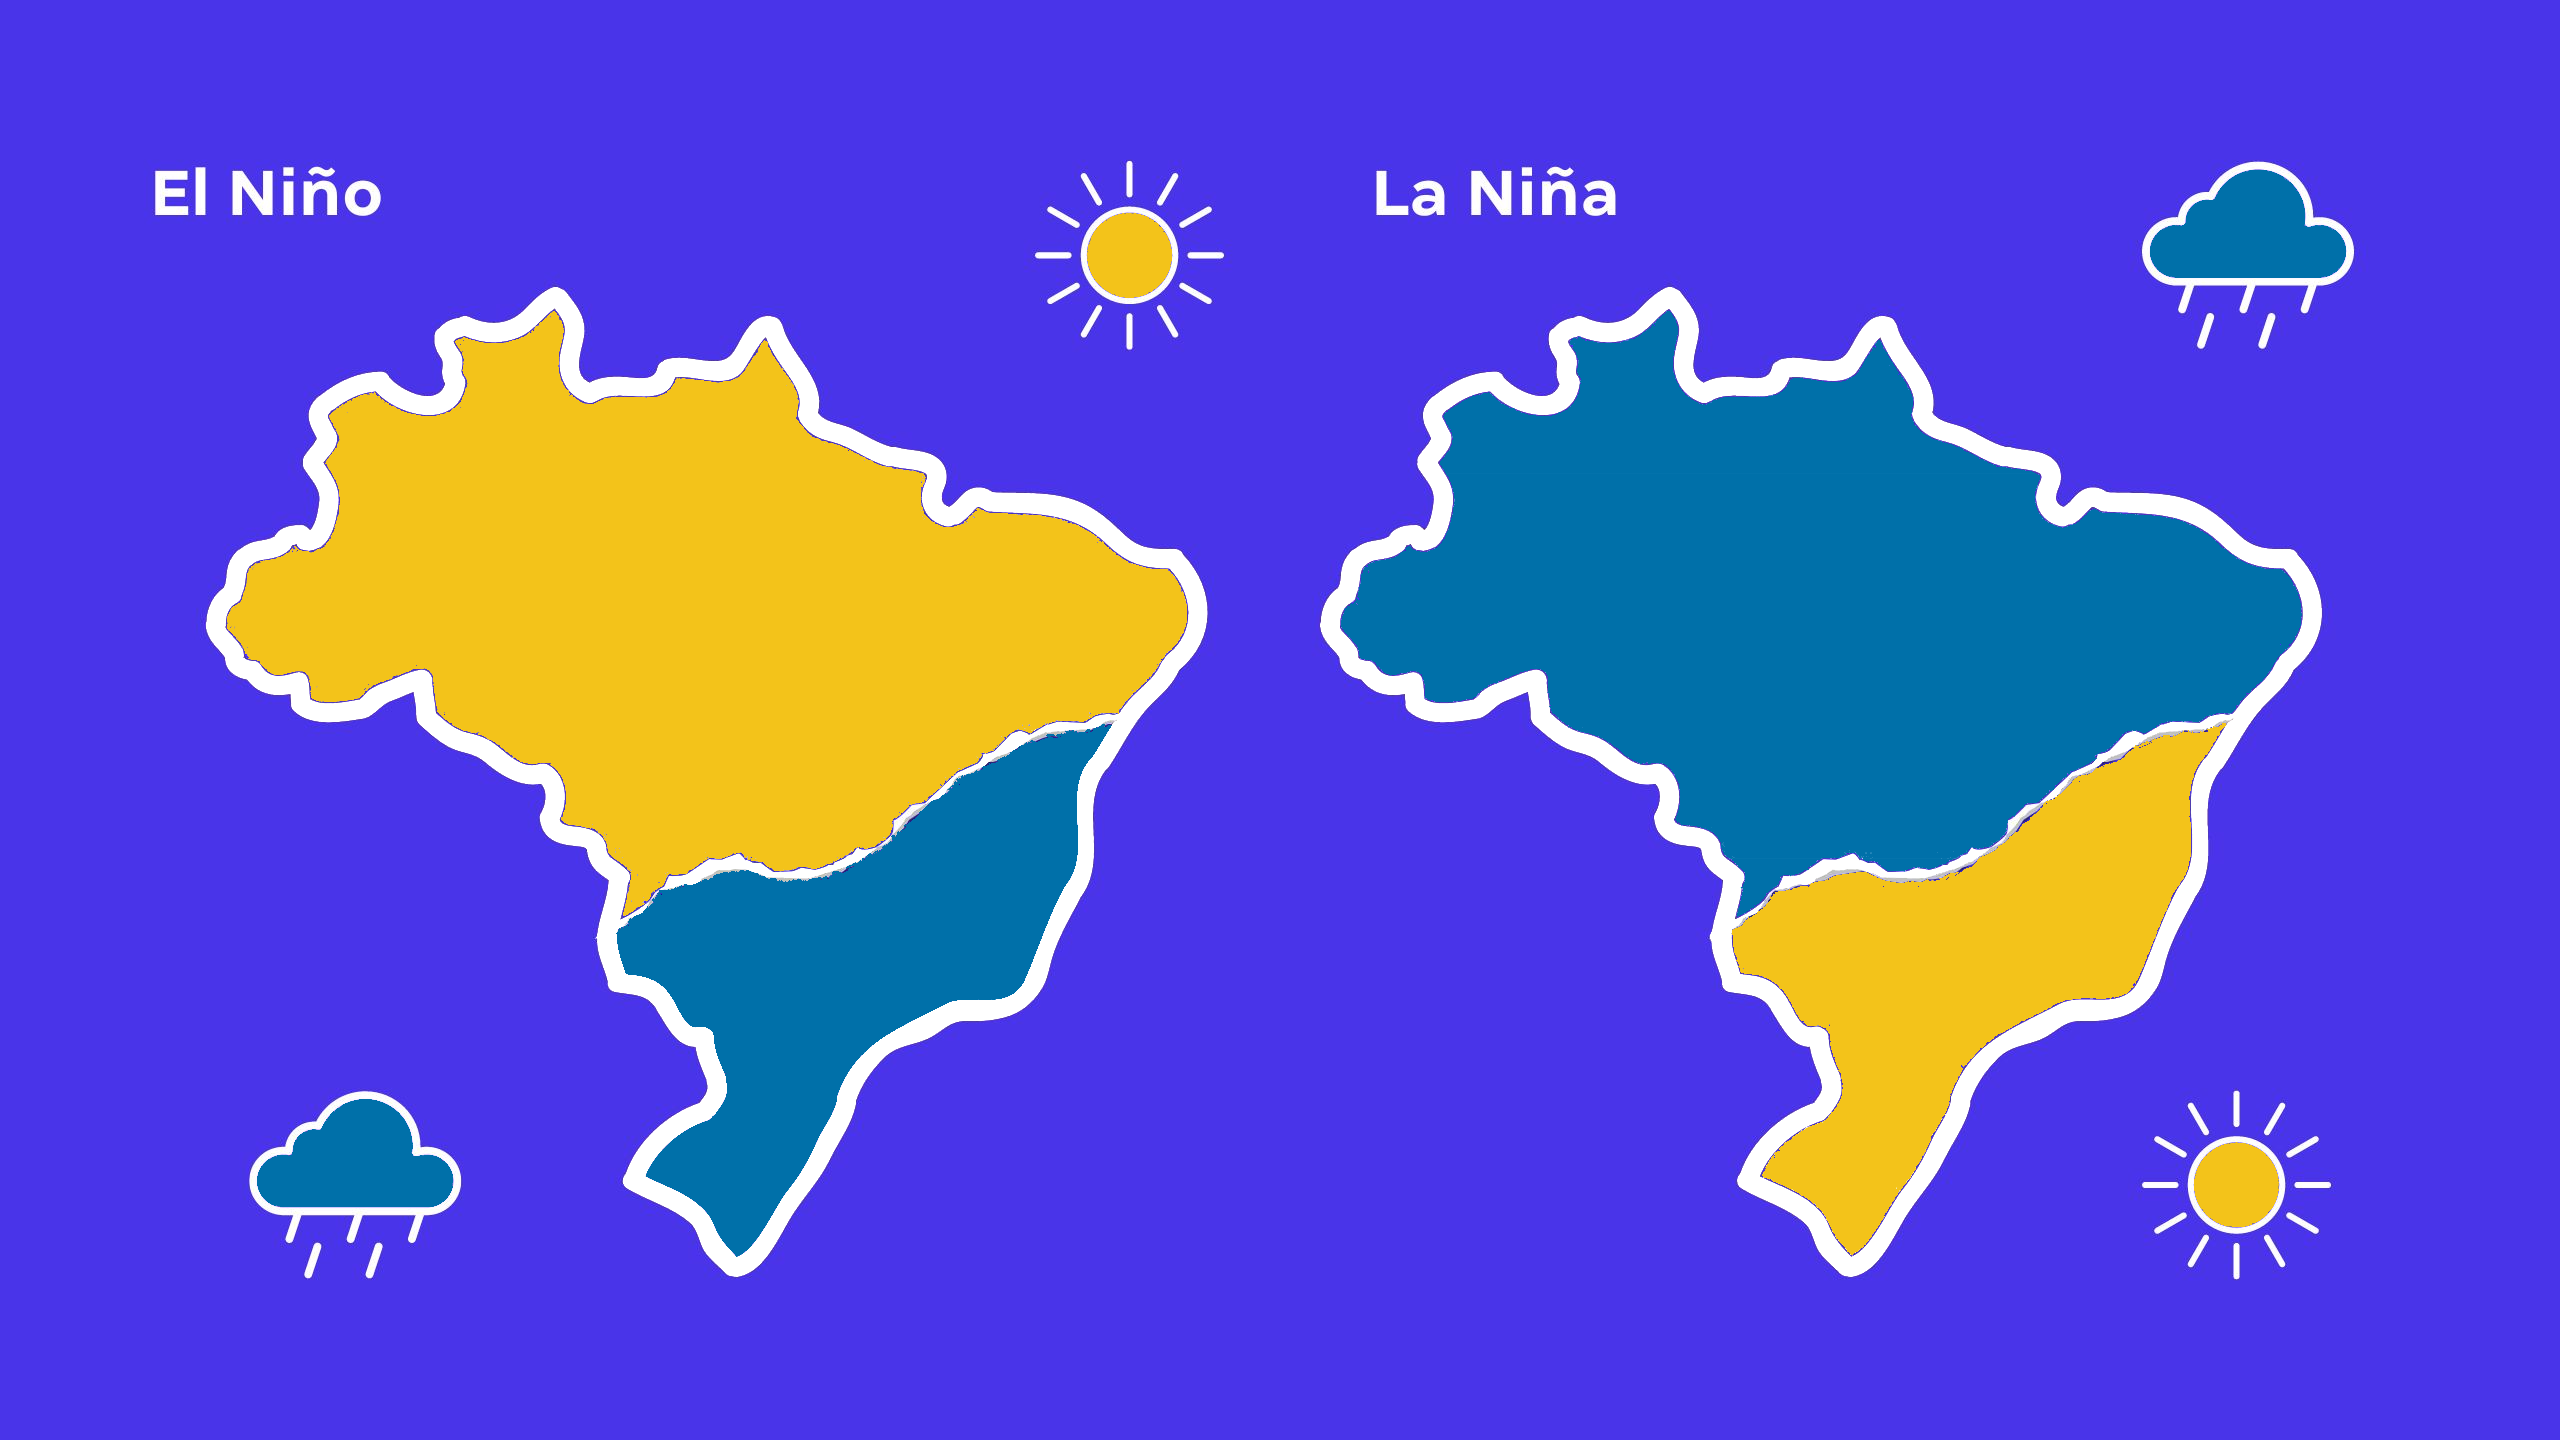 Influências do El Niño e La Niña no território brasileiro.